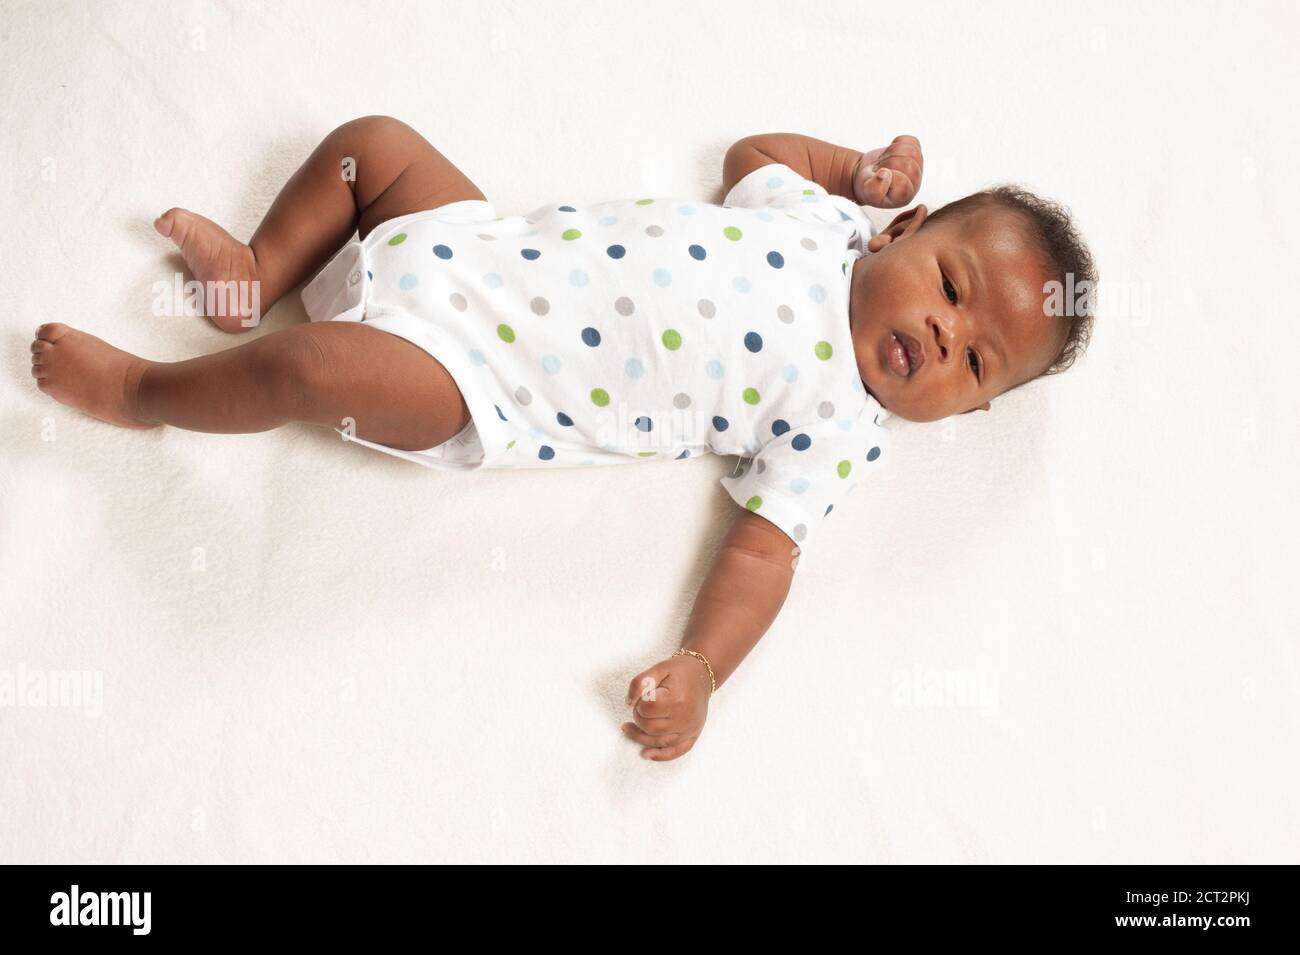 neonato bambino 7 settimane su schiena a lunghezza intera attenzione mano pugnale catarifrangente tonico collo Foto Stock